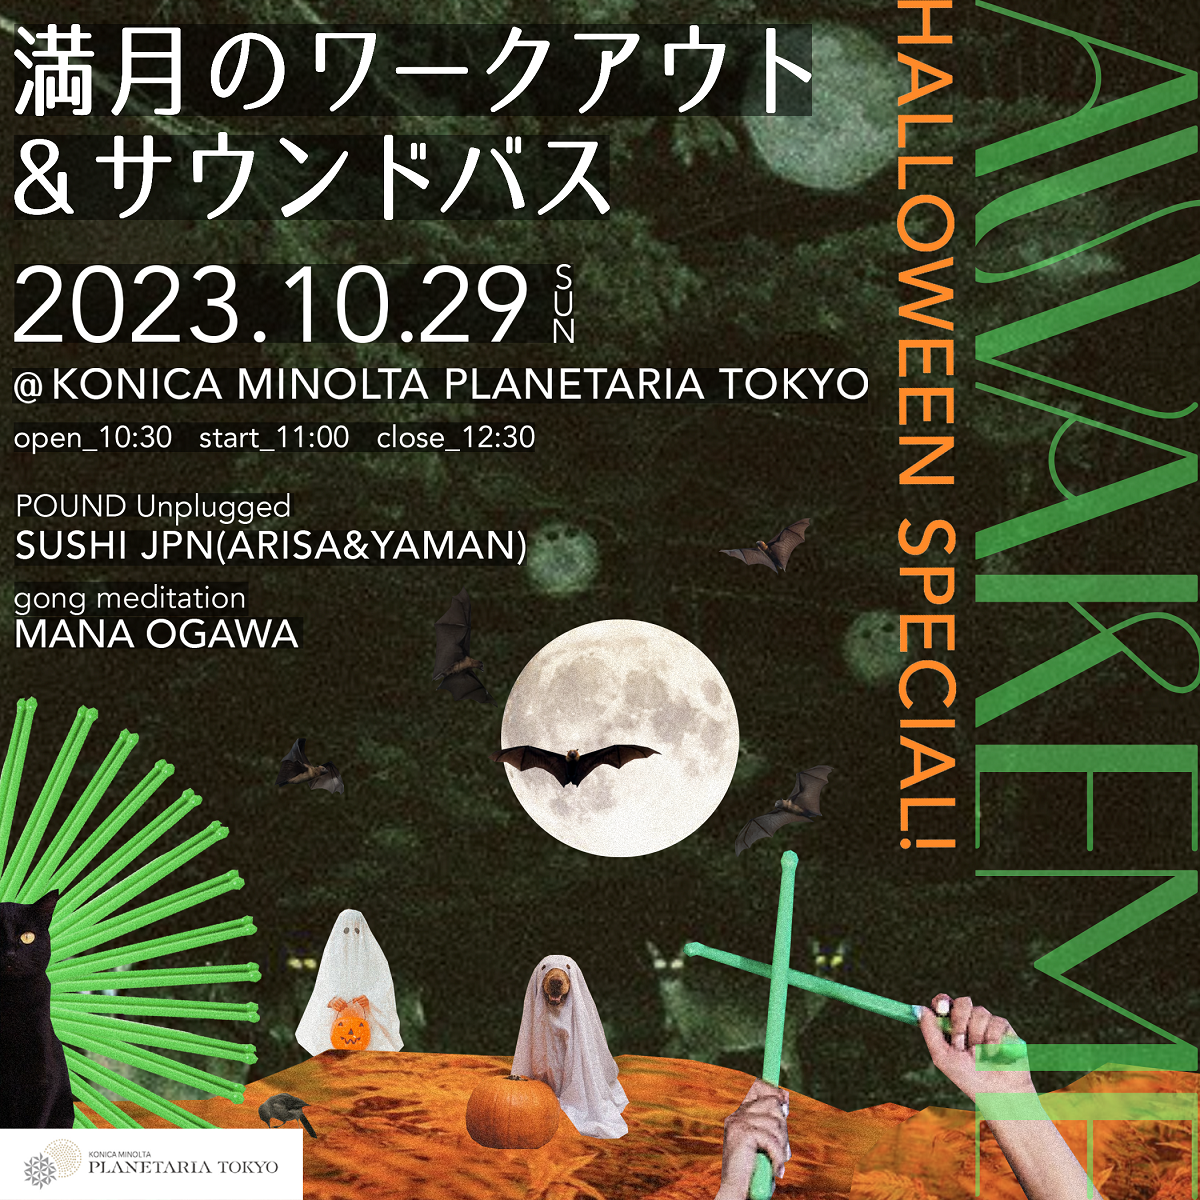 安倍佐和子プロデュース、ホリスティックビューティブランドのセレクトECショップ「HOLISTIC JAPAN」オープン！土壌の恵みを凝縮、人と地球に優しく、クリーンな環境で育まれた商品をセレクト。